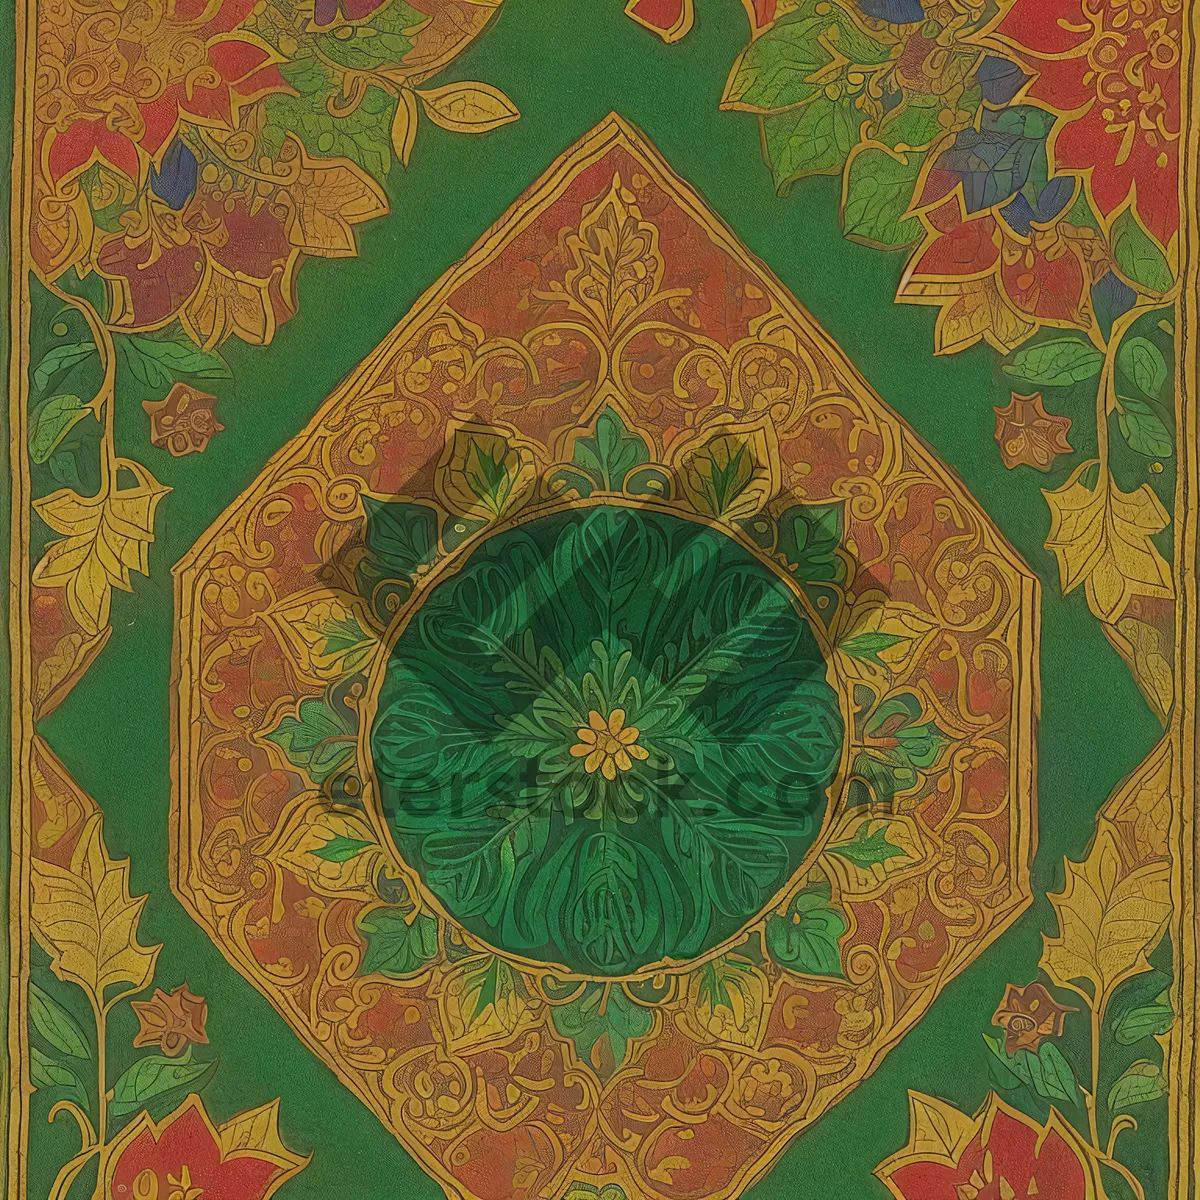 Picture of Floral Arabesque Motif - Vintage Decorative Tile